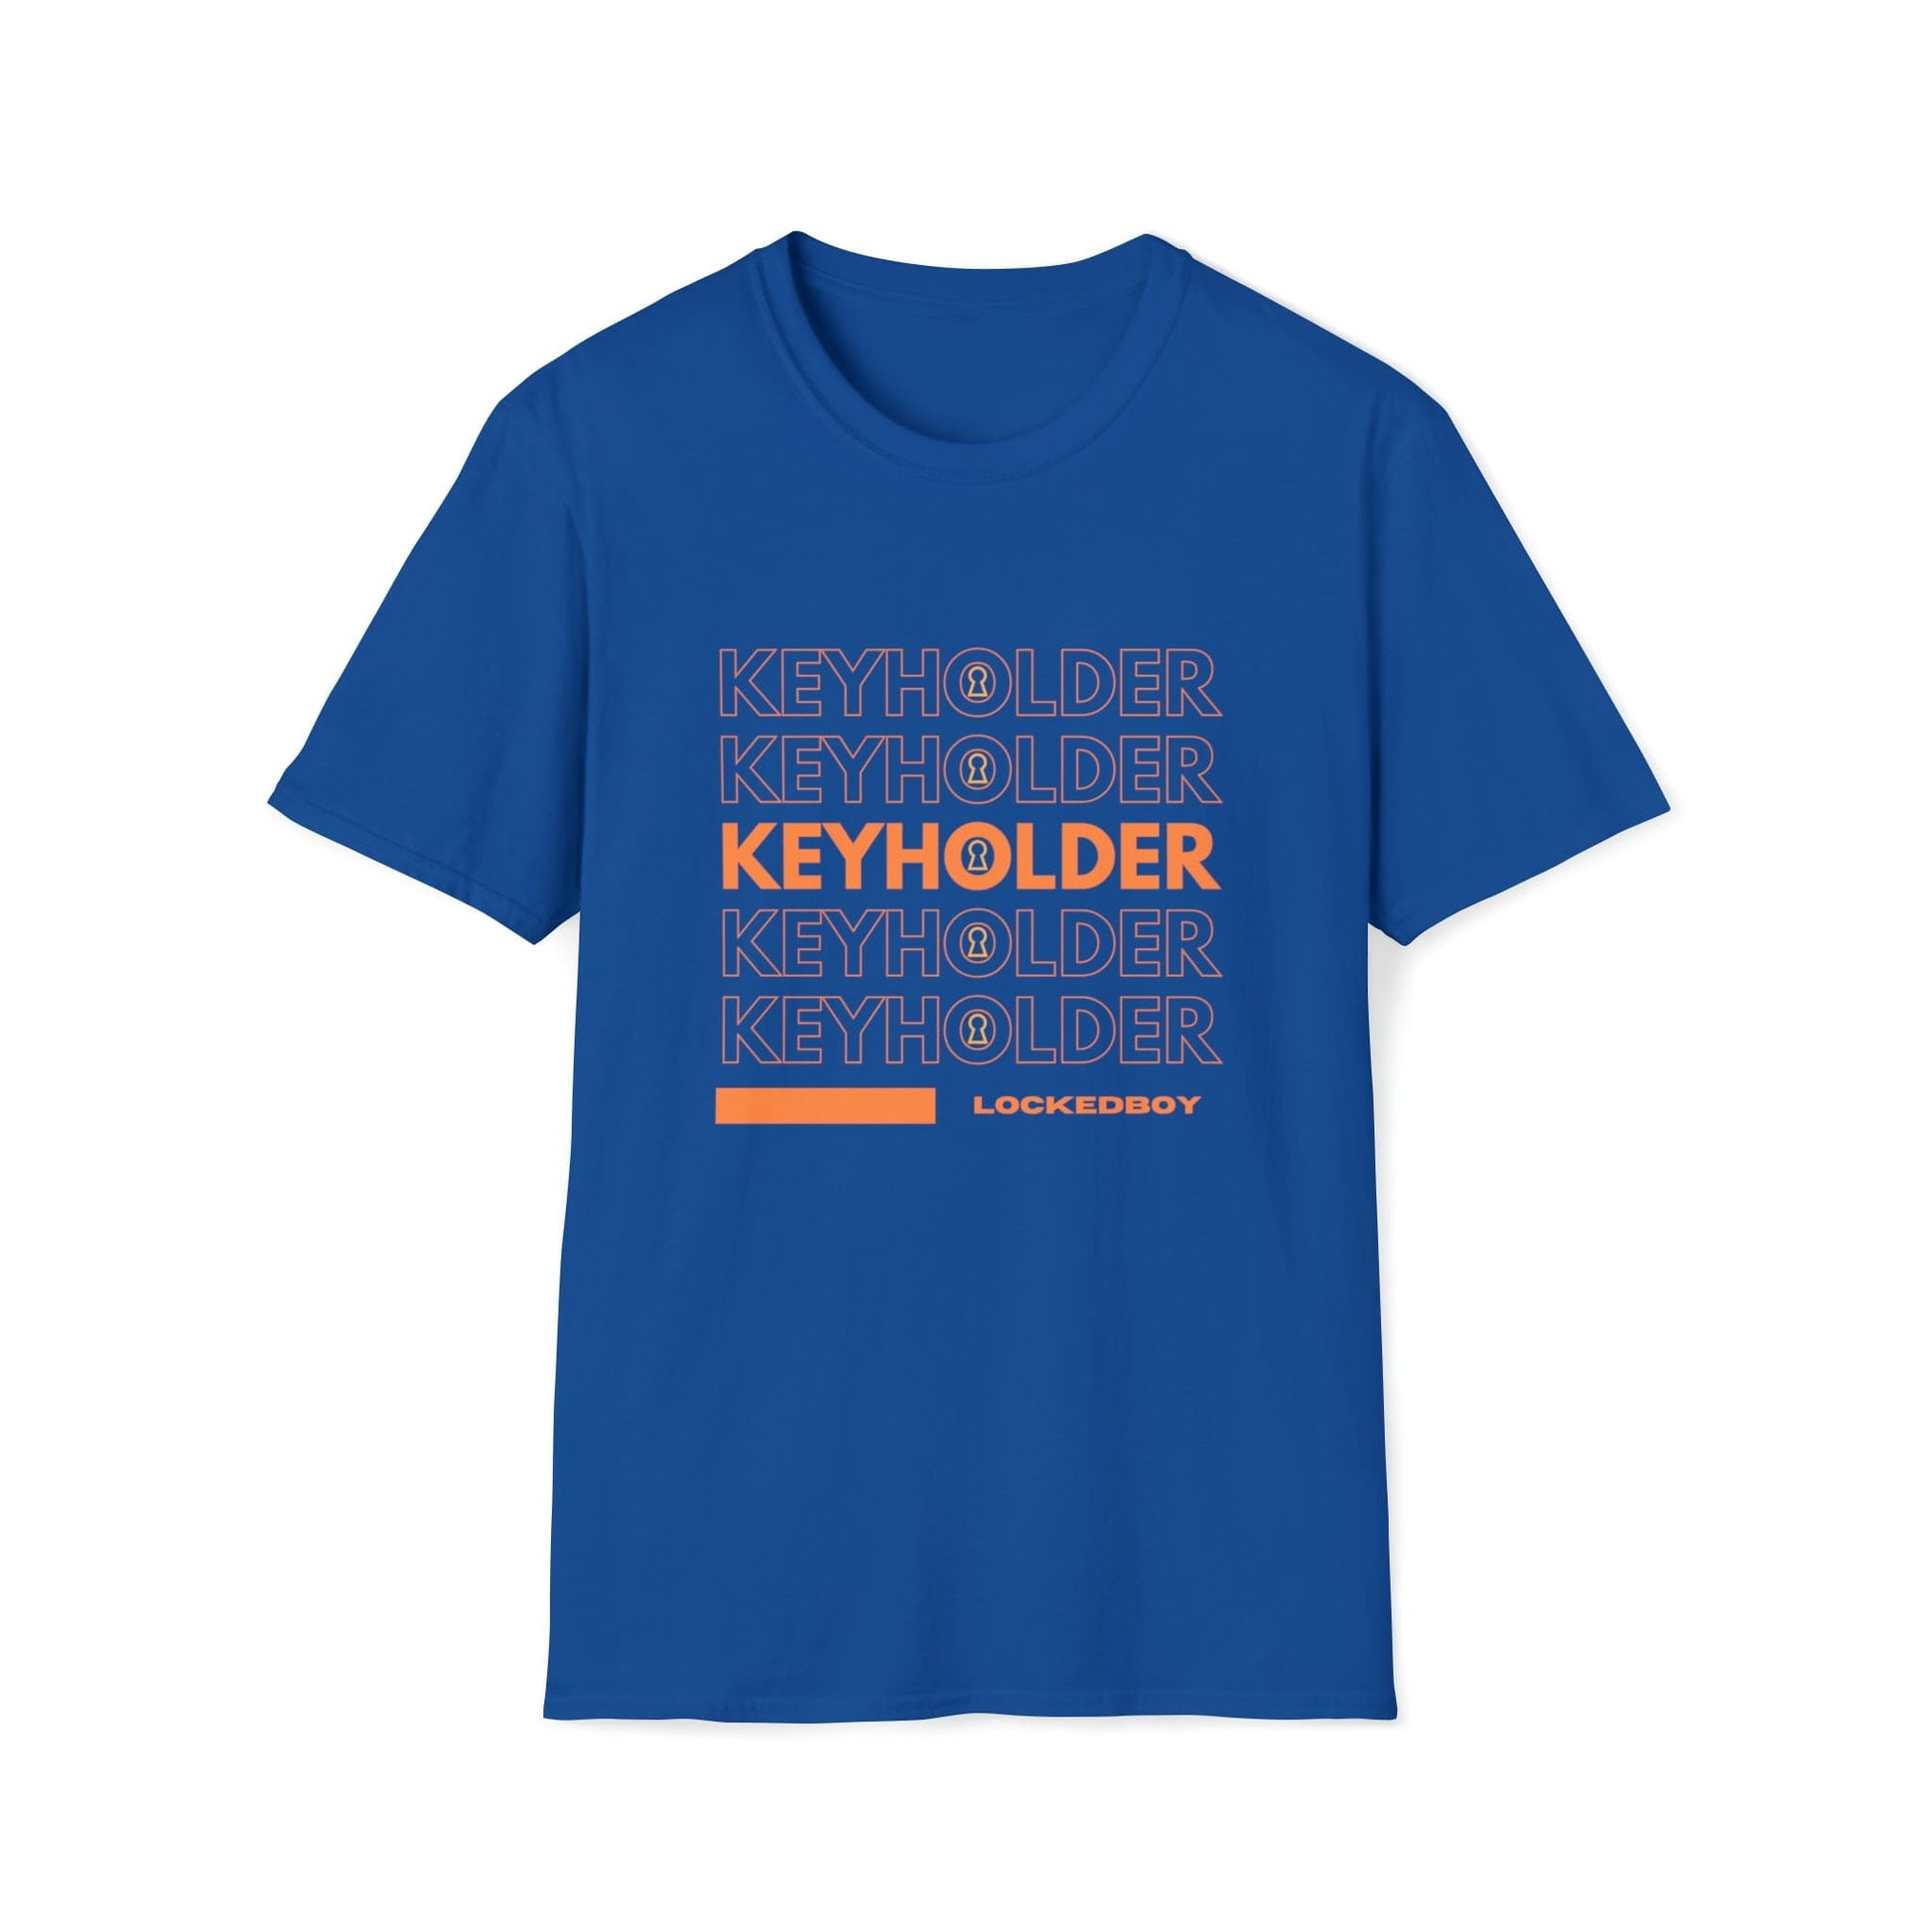 T-Shirt Royal / S KEYHOLDER bag Inspo - Chastity Shirts by LockedBoy Athletic LEATHERDADDY BATOR